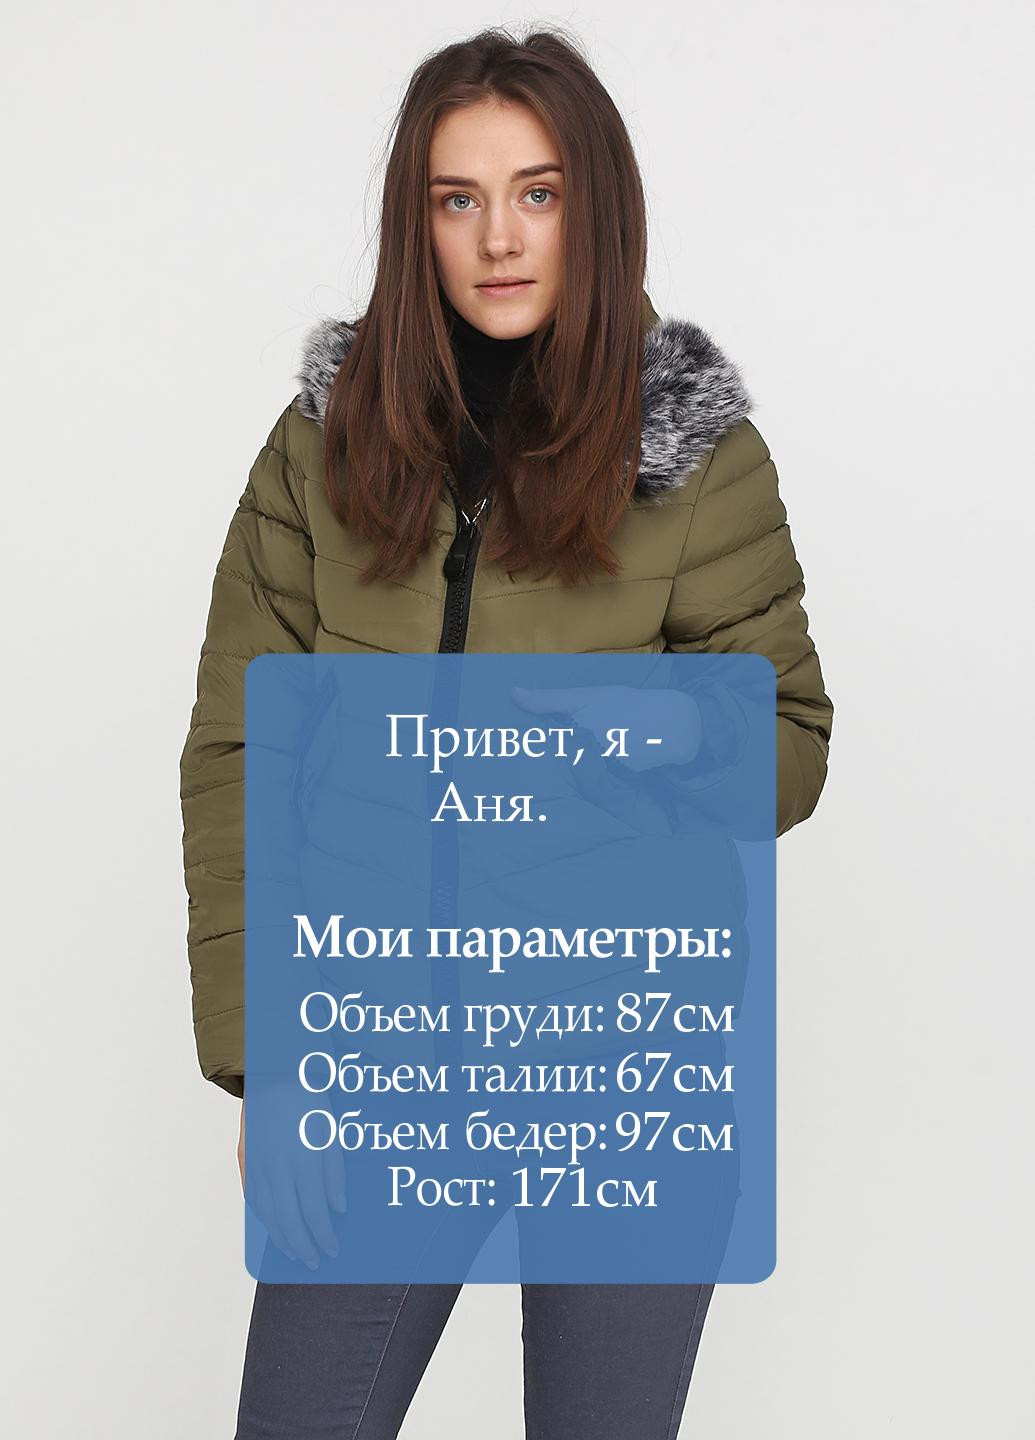 Оливкова (хакі) зимня куртка XINYU